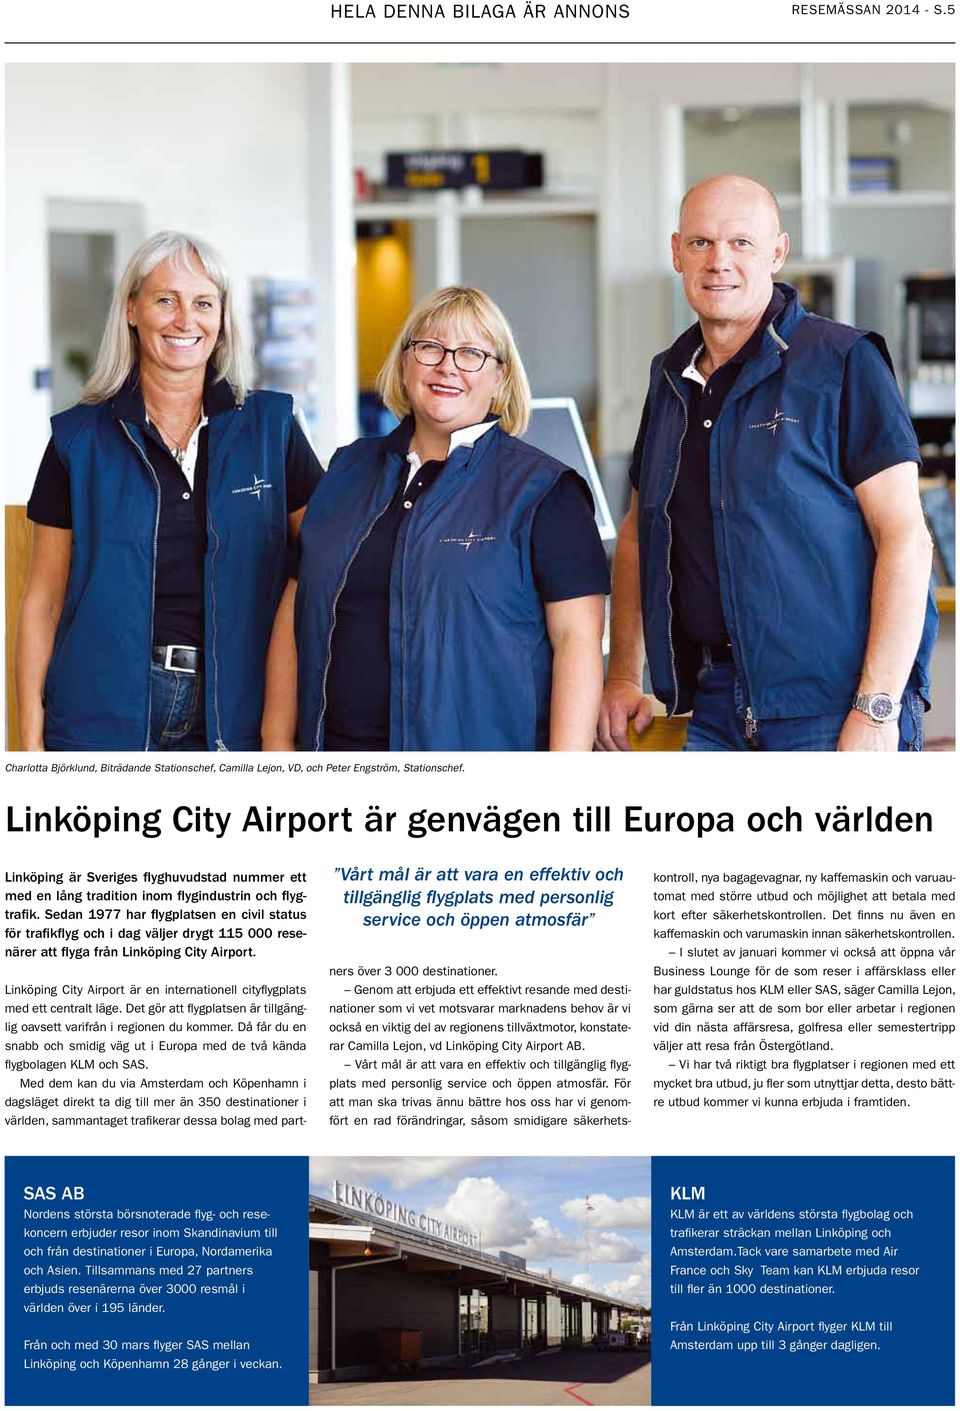 Sedan 1977 har flygplatsen en civil status för trafikflyg och i dag väljer drygt 115 000 resenärer att flyga från Linköping City Airport.